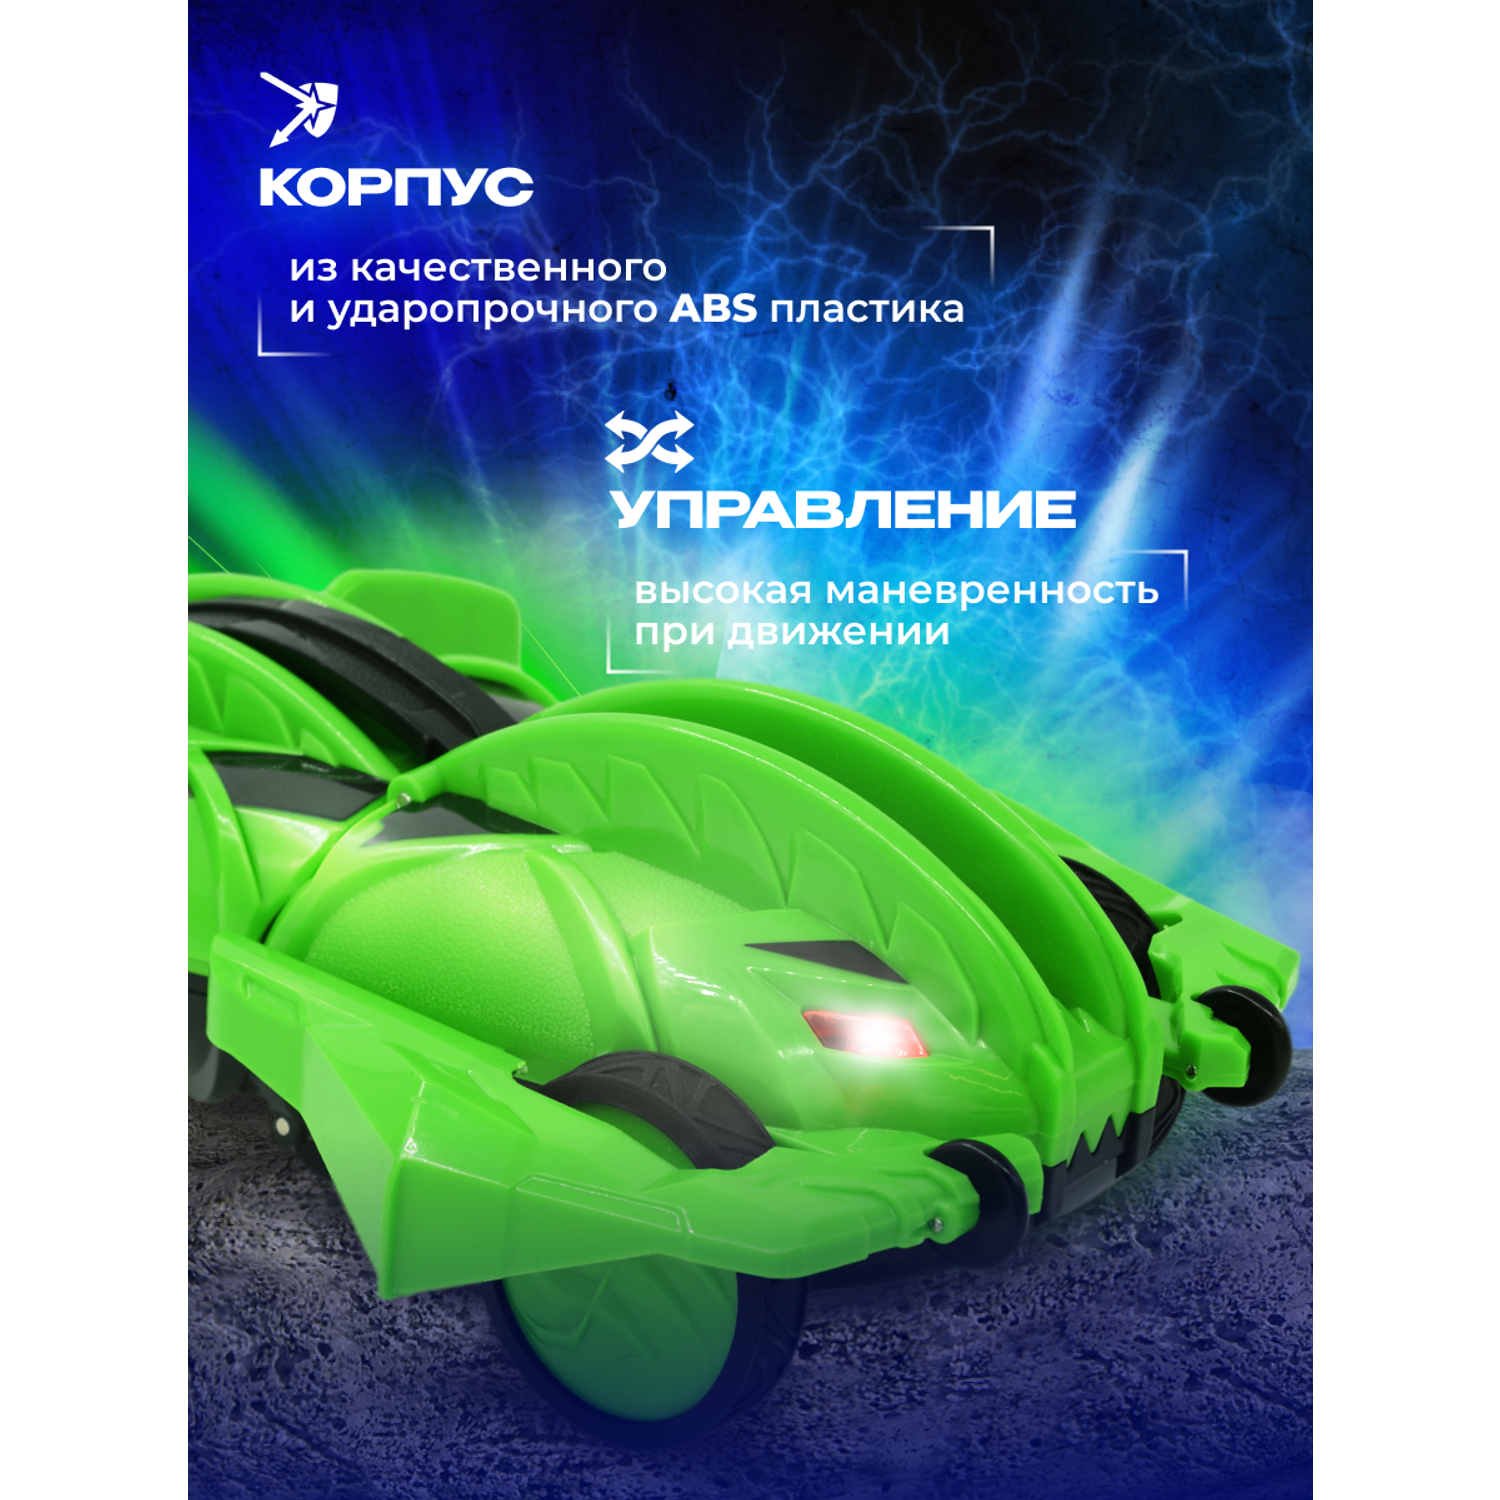 Игрушка радиоуправляемая Terra Sect машинка трансформер в виде ящерицы зеленая - фото 8